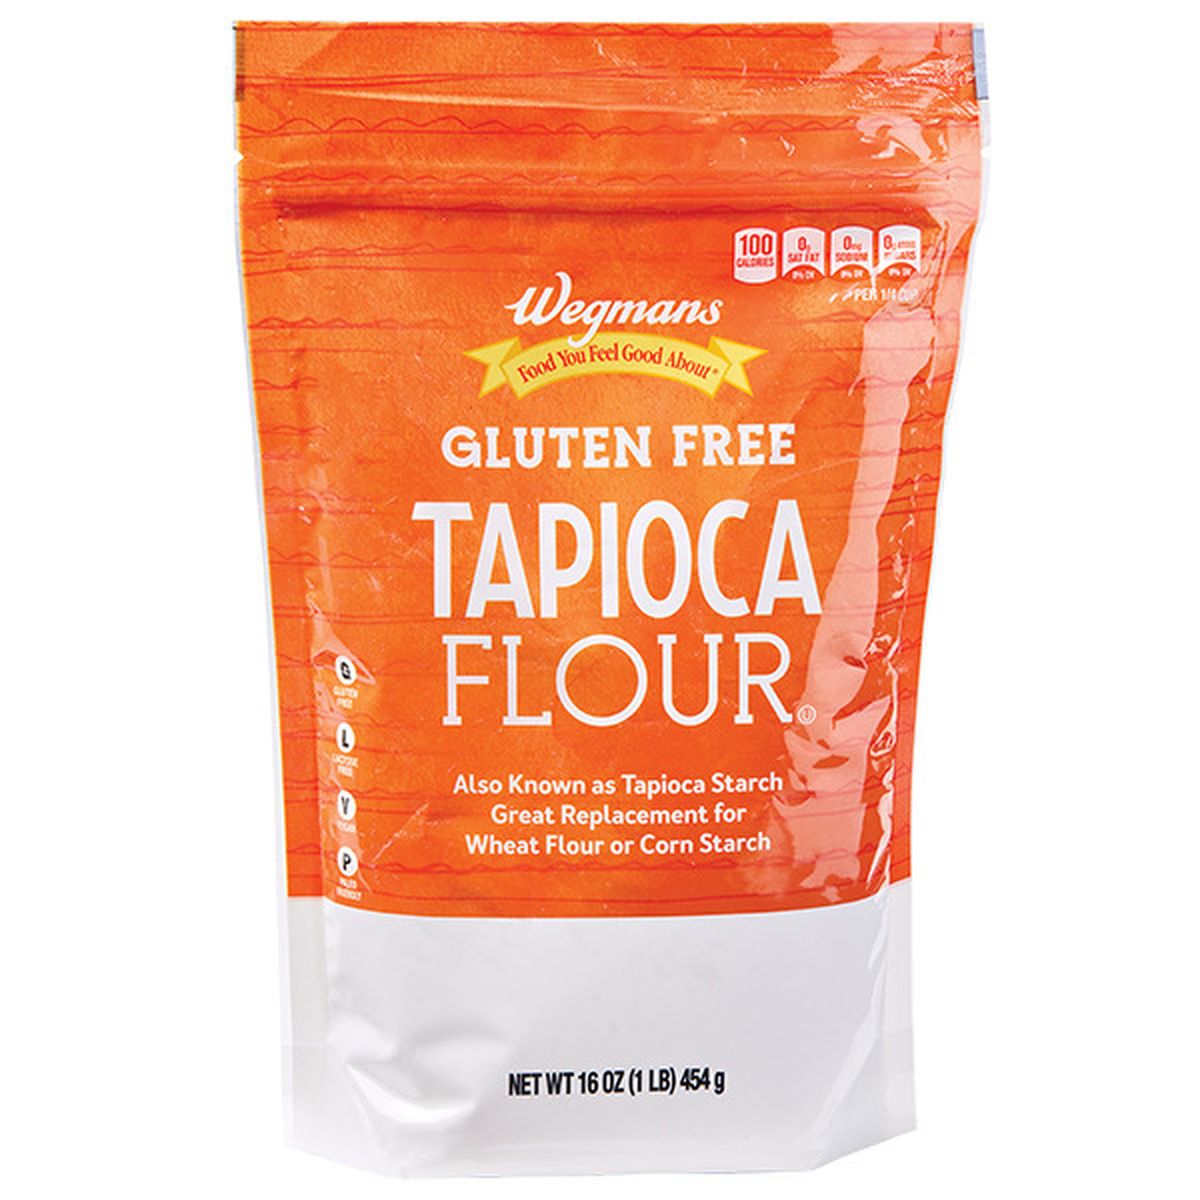 Calories in Wegmans Gluten Free Tapioca Flour